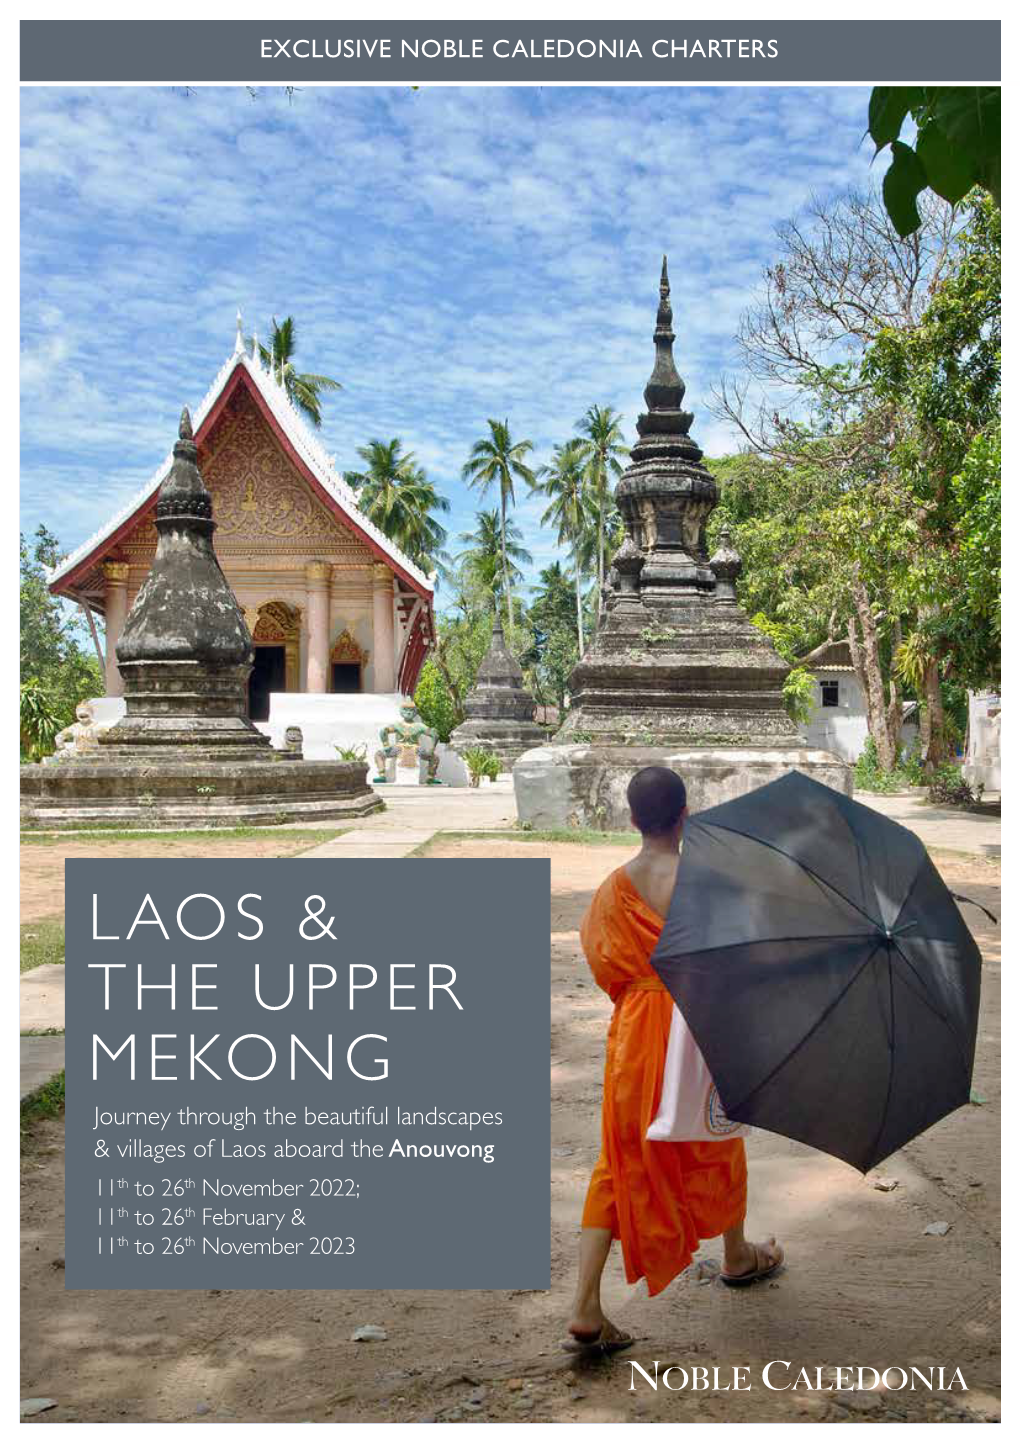 Laos & the Upper Mekong